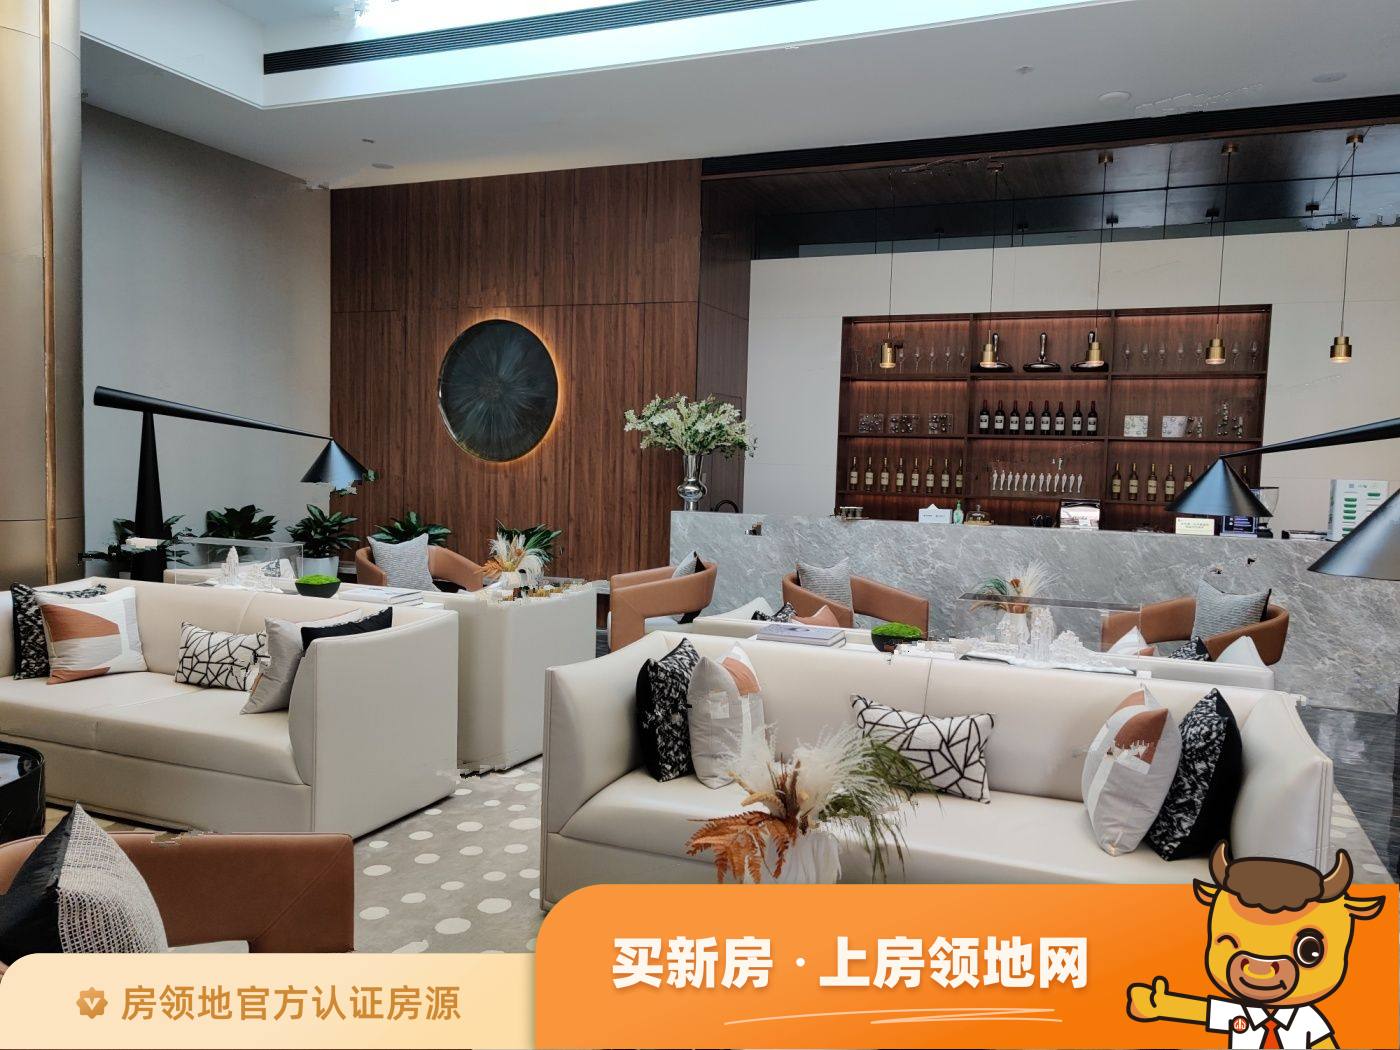 广州广州南沙华宇凤凰艺术岛均价为27500元每平米